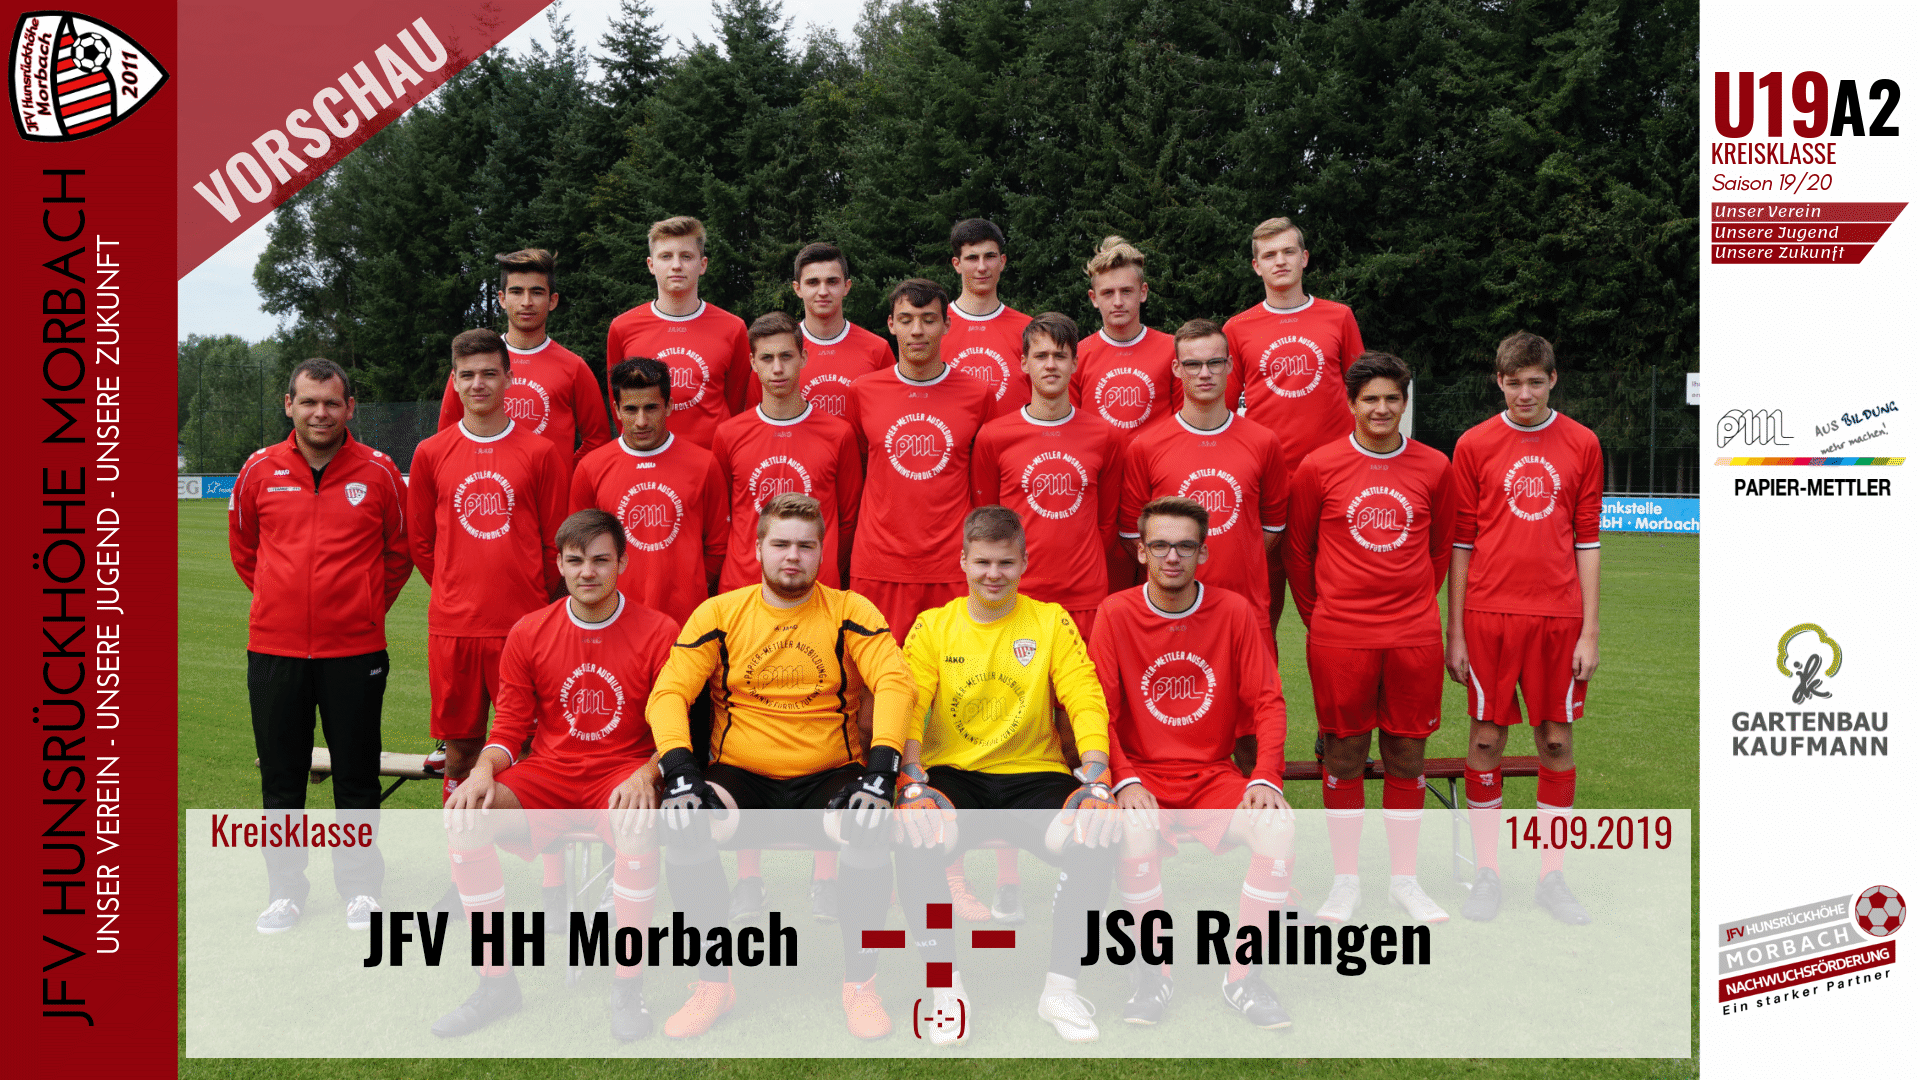 You are currently viewing U19 A2: Vorbericht ~ JFV Hunsrückhöhe Morbach – JSG Ralingen ~ Sa., 14.09.19 18:00 Uhr